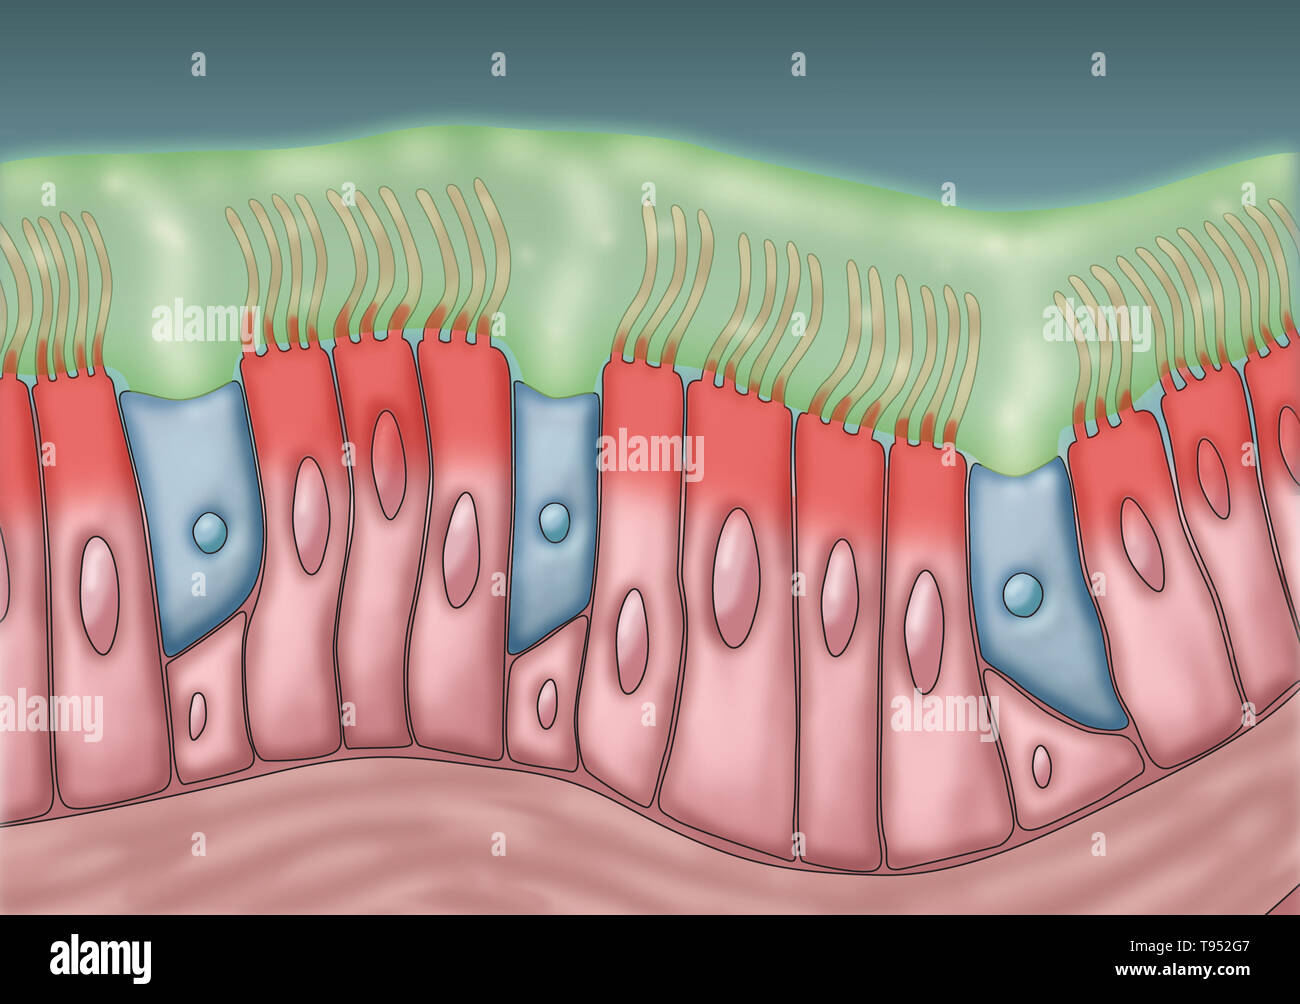 Ilustración médica representando cilia y moco. El rítmico movimiento hacia delante y hacia atrás de los cilios mueven el moco y las partículas atrapadas, tales como bacterias y virus, de los senos paranasales. Foto de stock